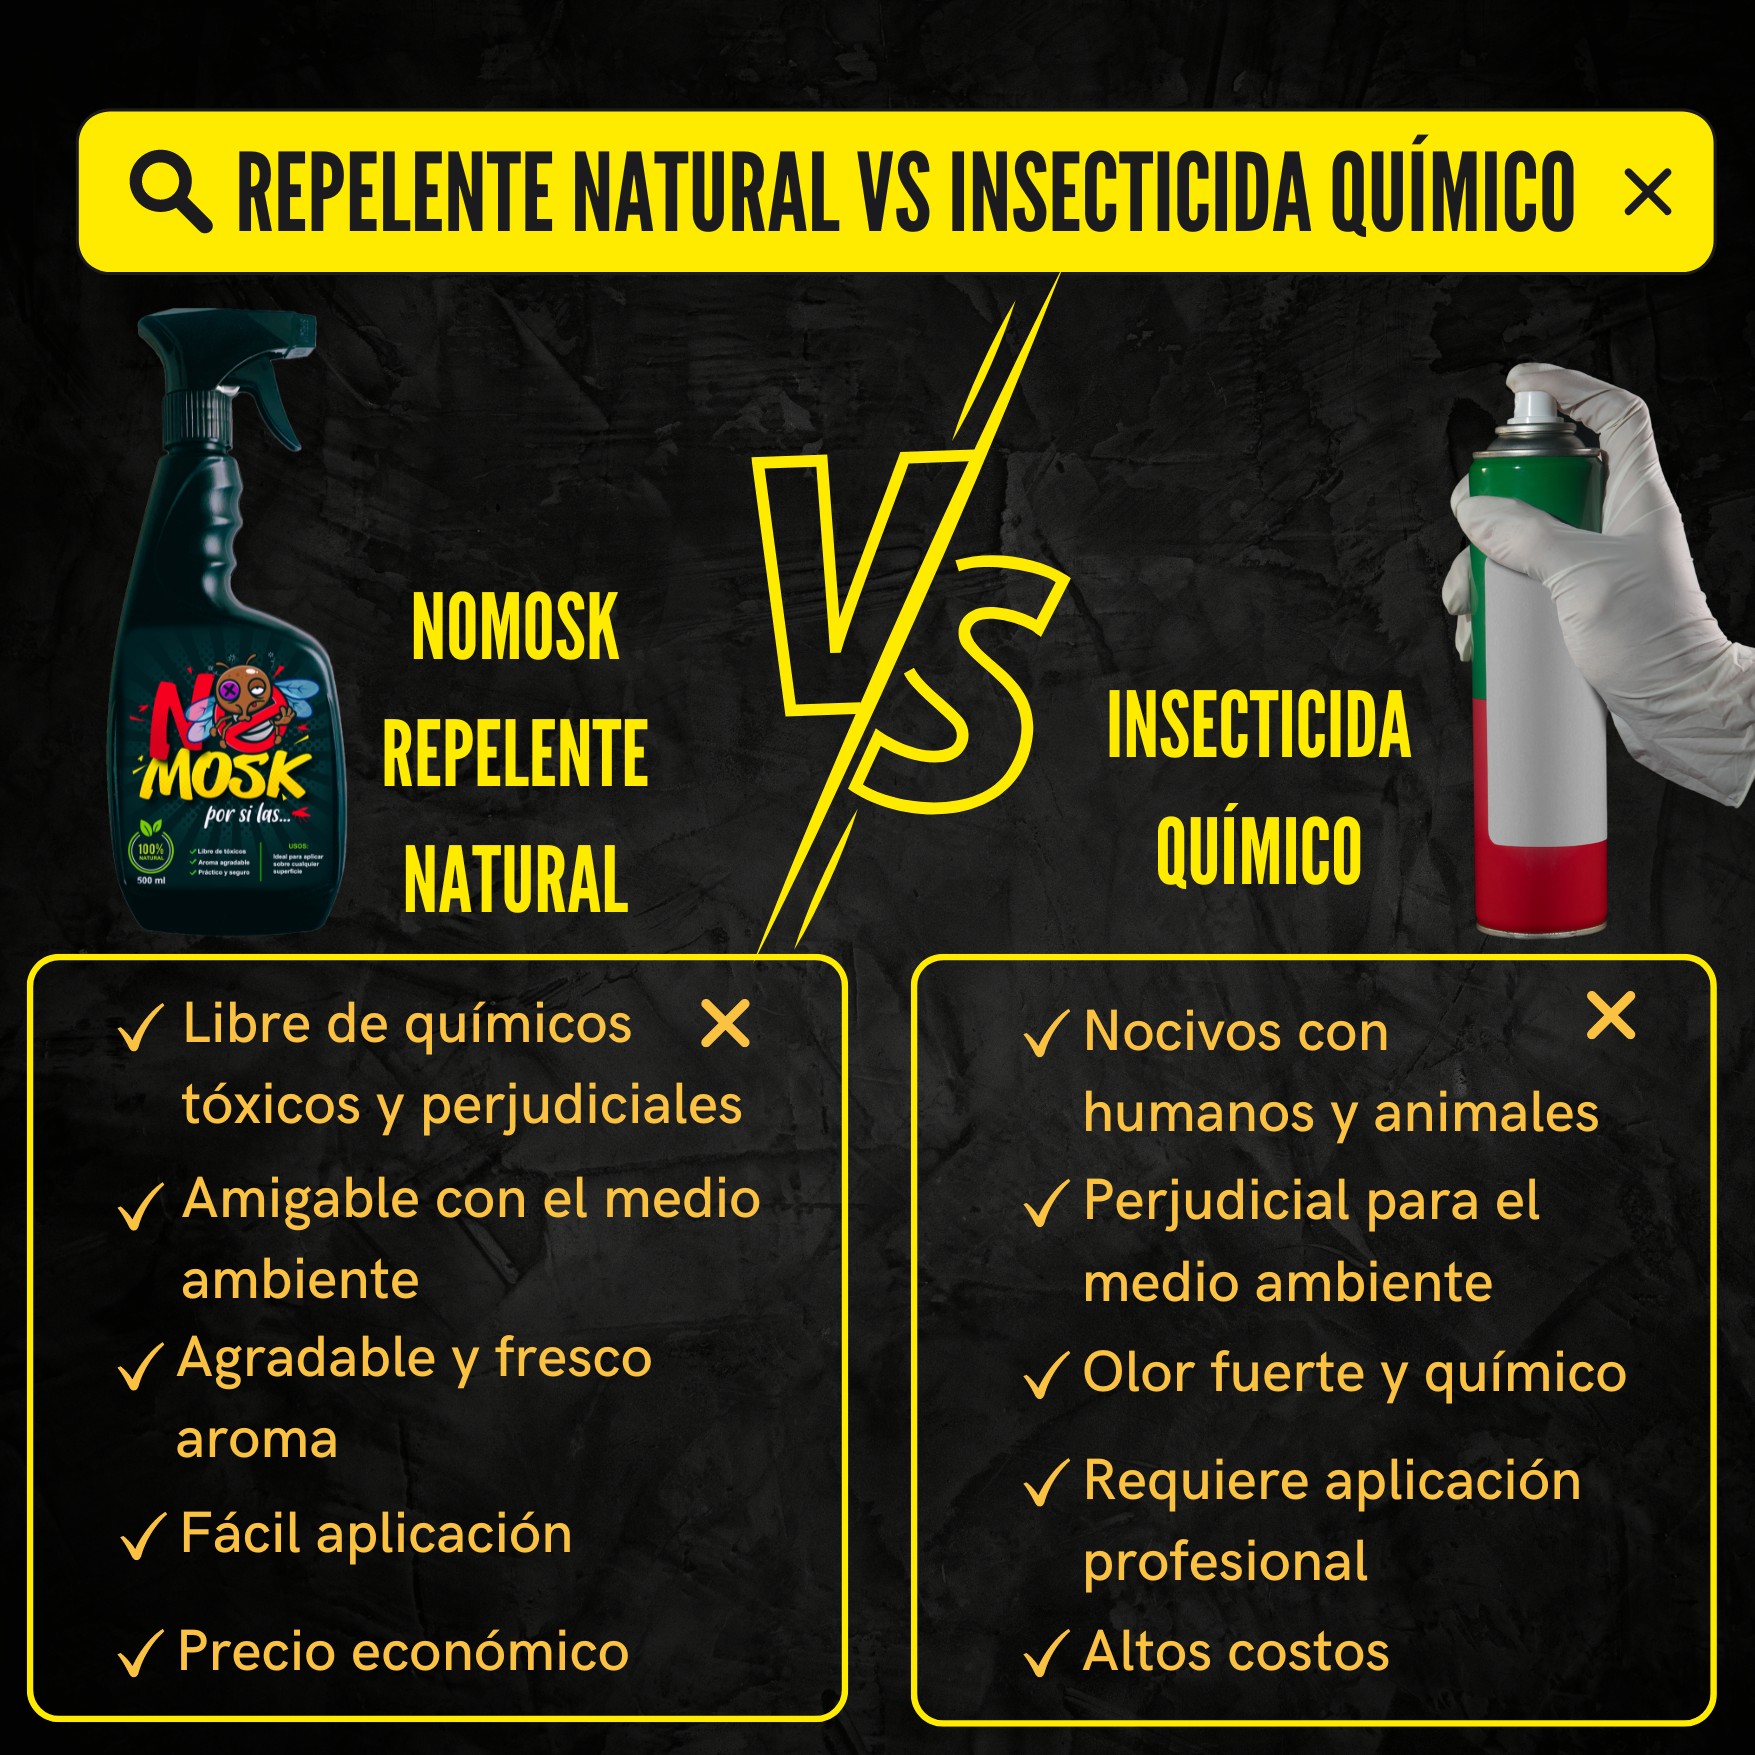 NoMosk vs Insecticida